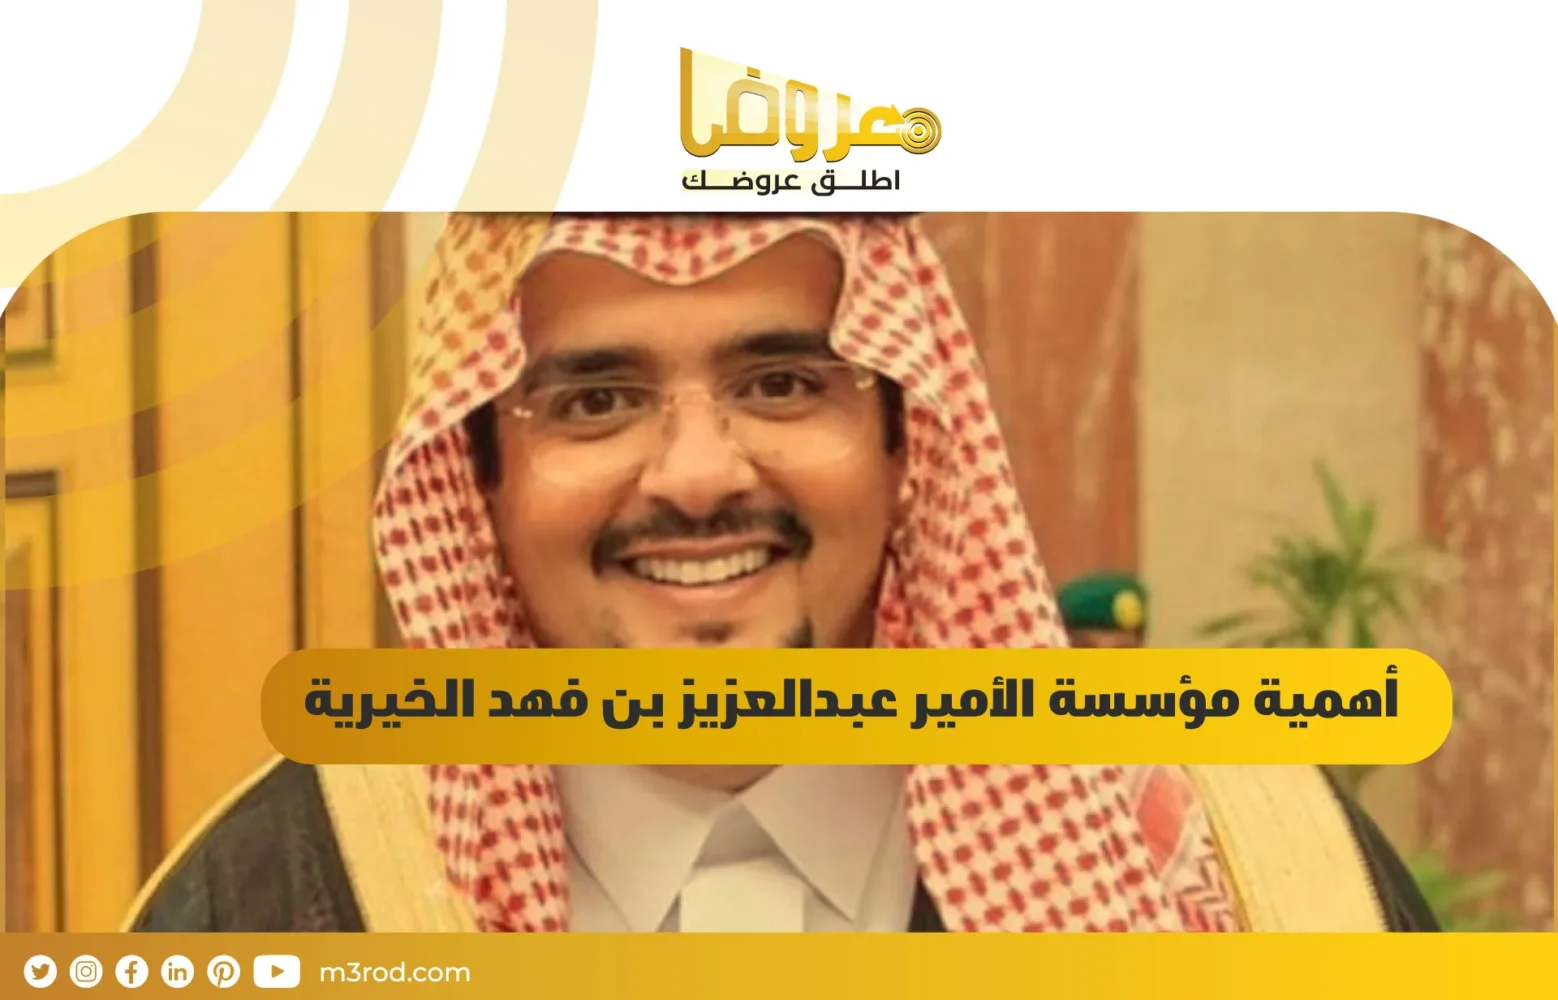 أهمية مؤسسة الأمير عبدالعزيز بن فهد الخيرية